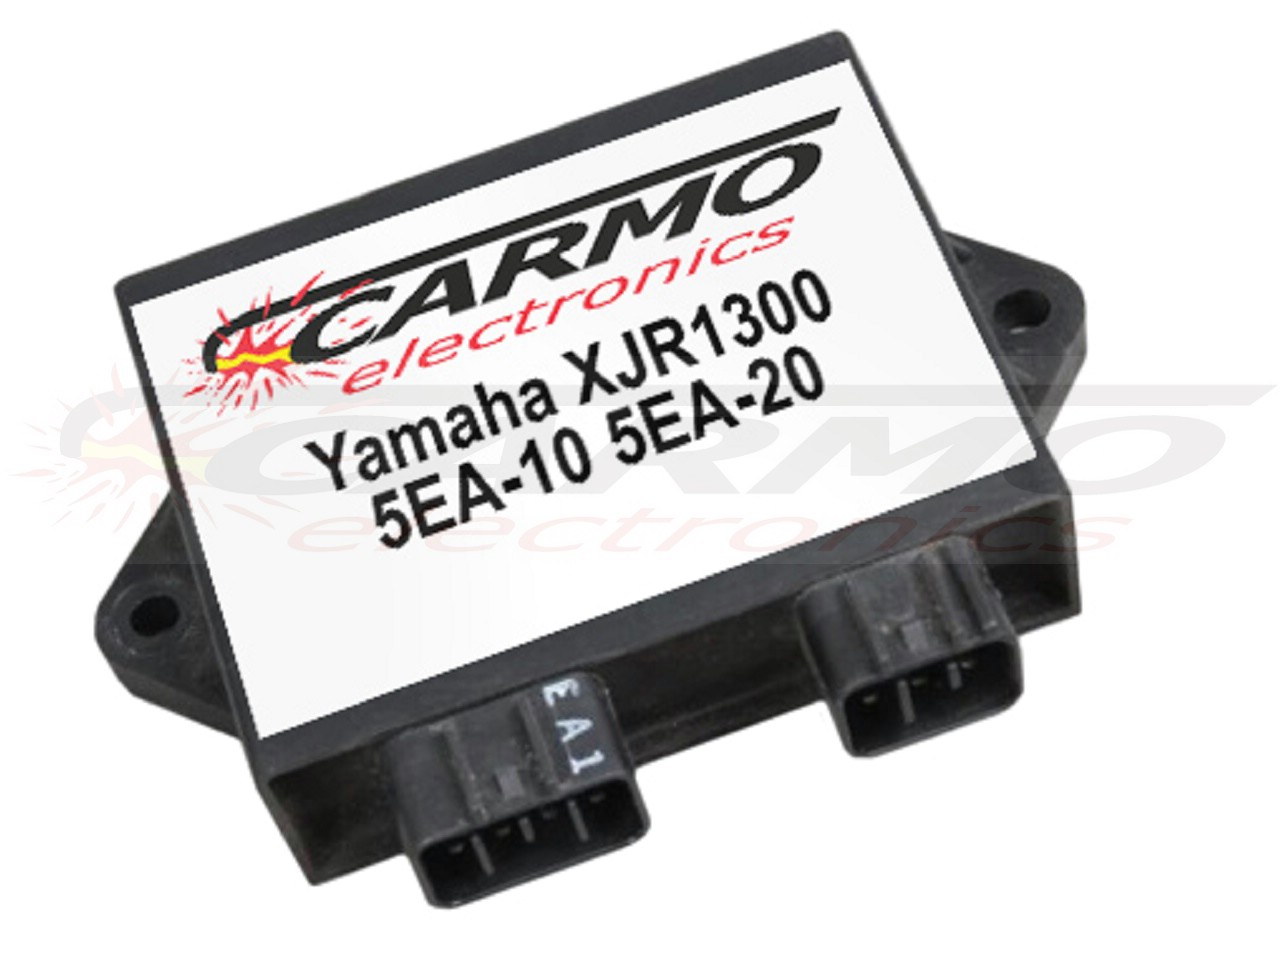 Yamaha XJR1300 SP C racer TCI CDI dispositif de commande boîte noire (5EA-10, 5EA-20) - Cliquez sur l'image pour la fermer